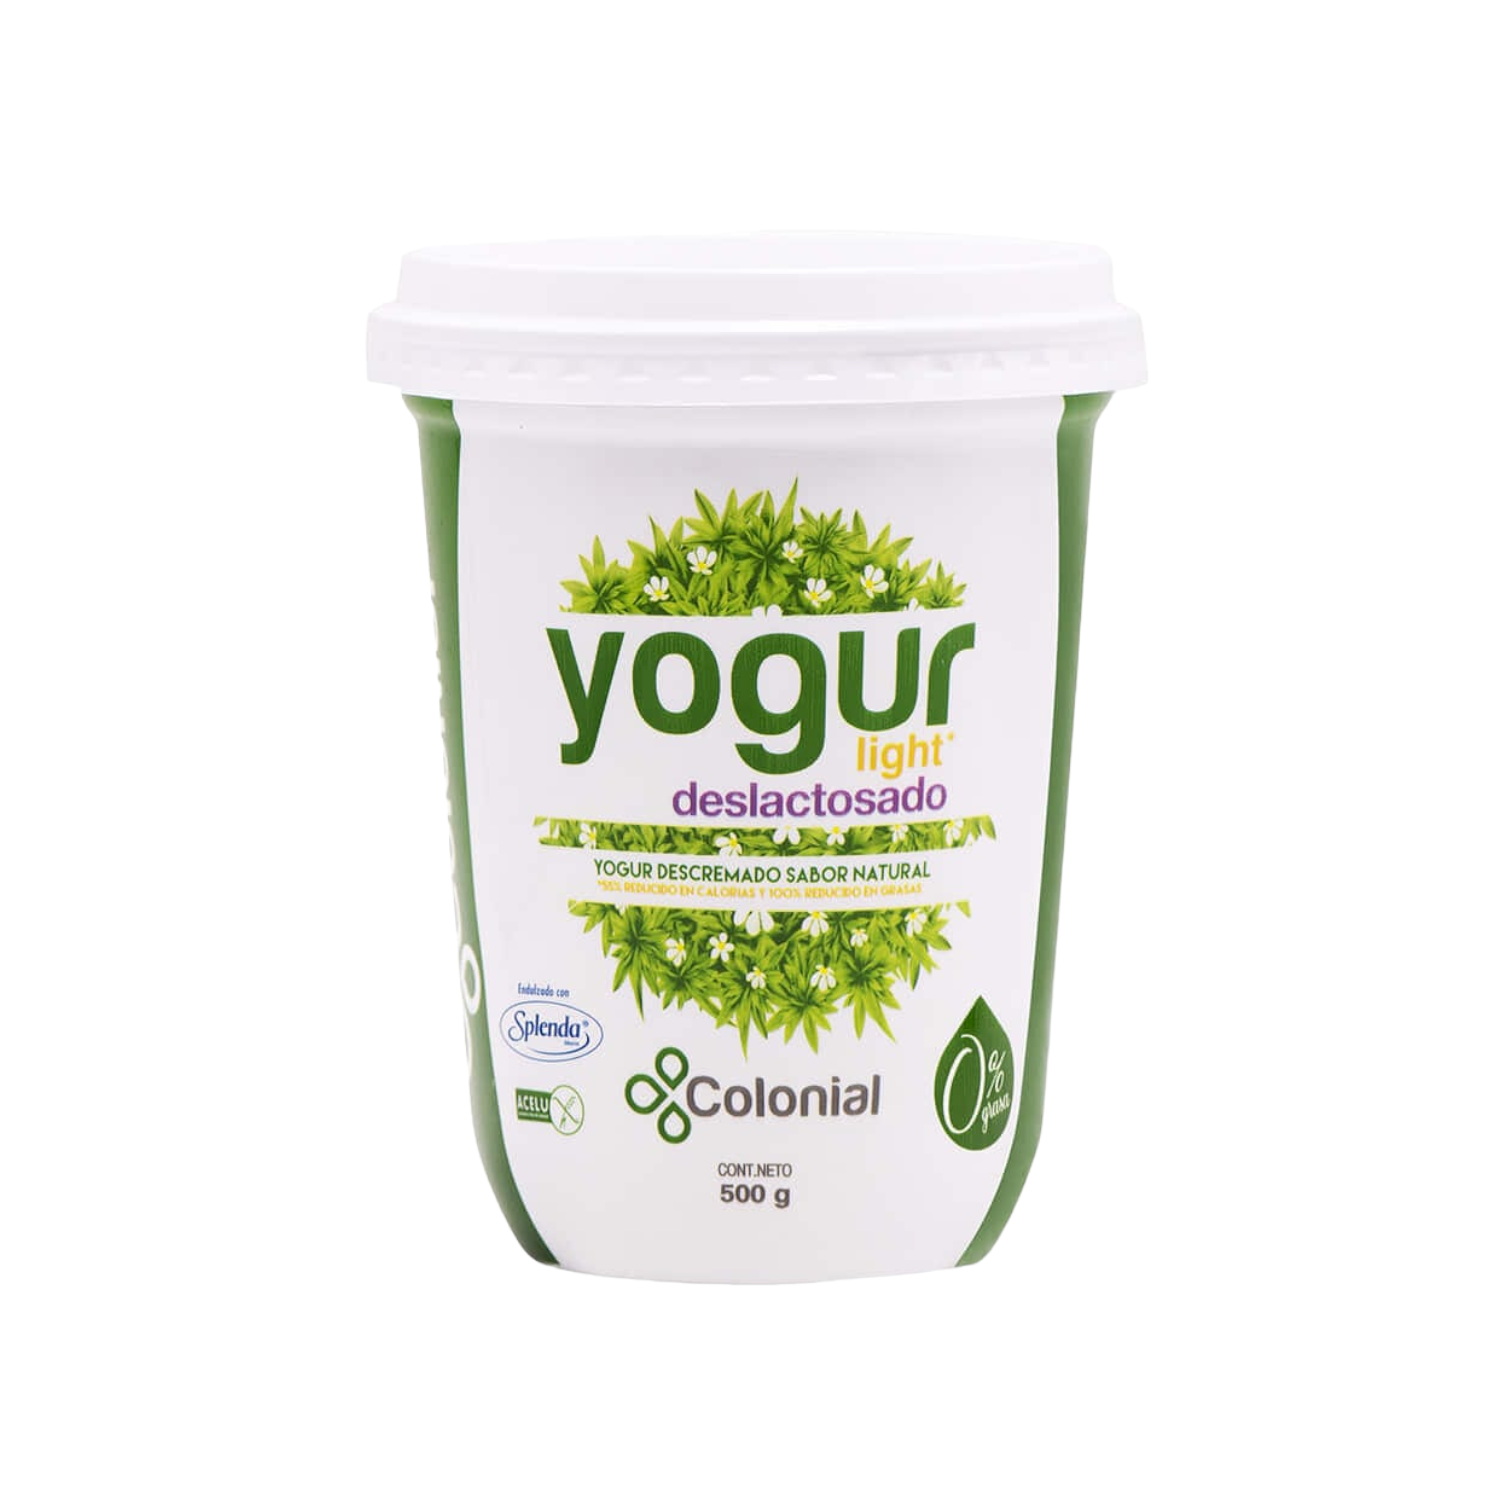 Yogur Integral Natural